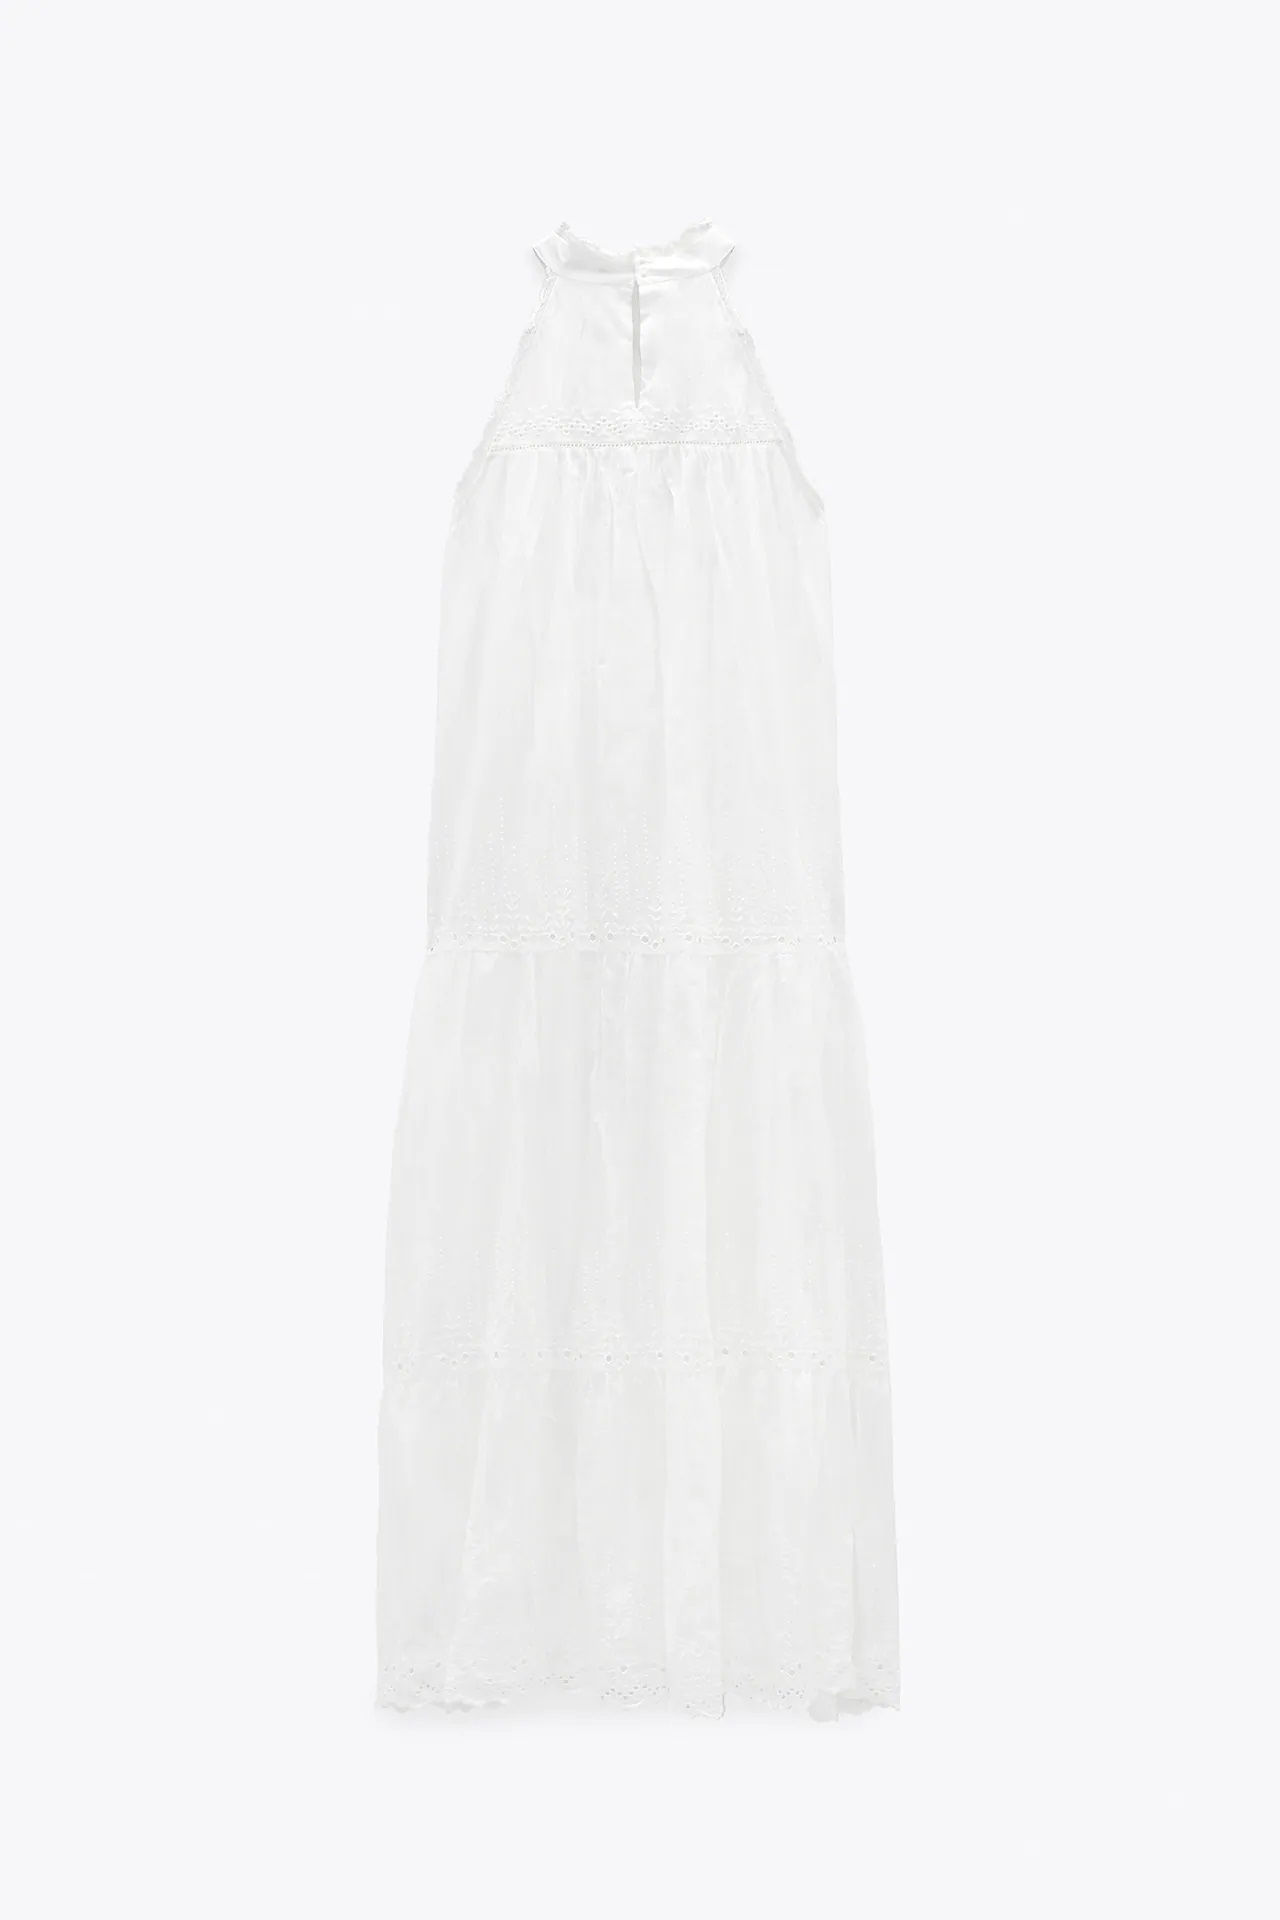 El vestido blanco de Zara que luce Amelia Bono es perfecto para las vacaciones de verano 